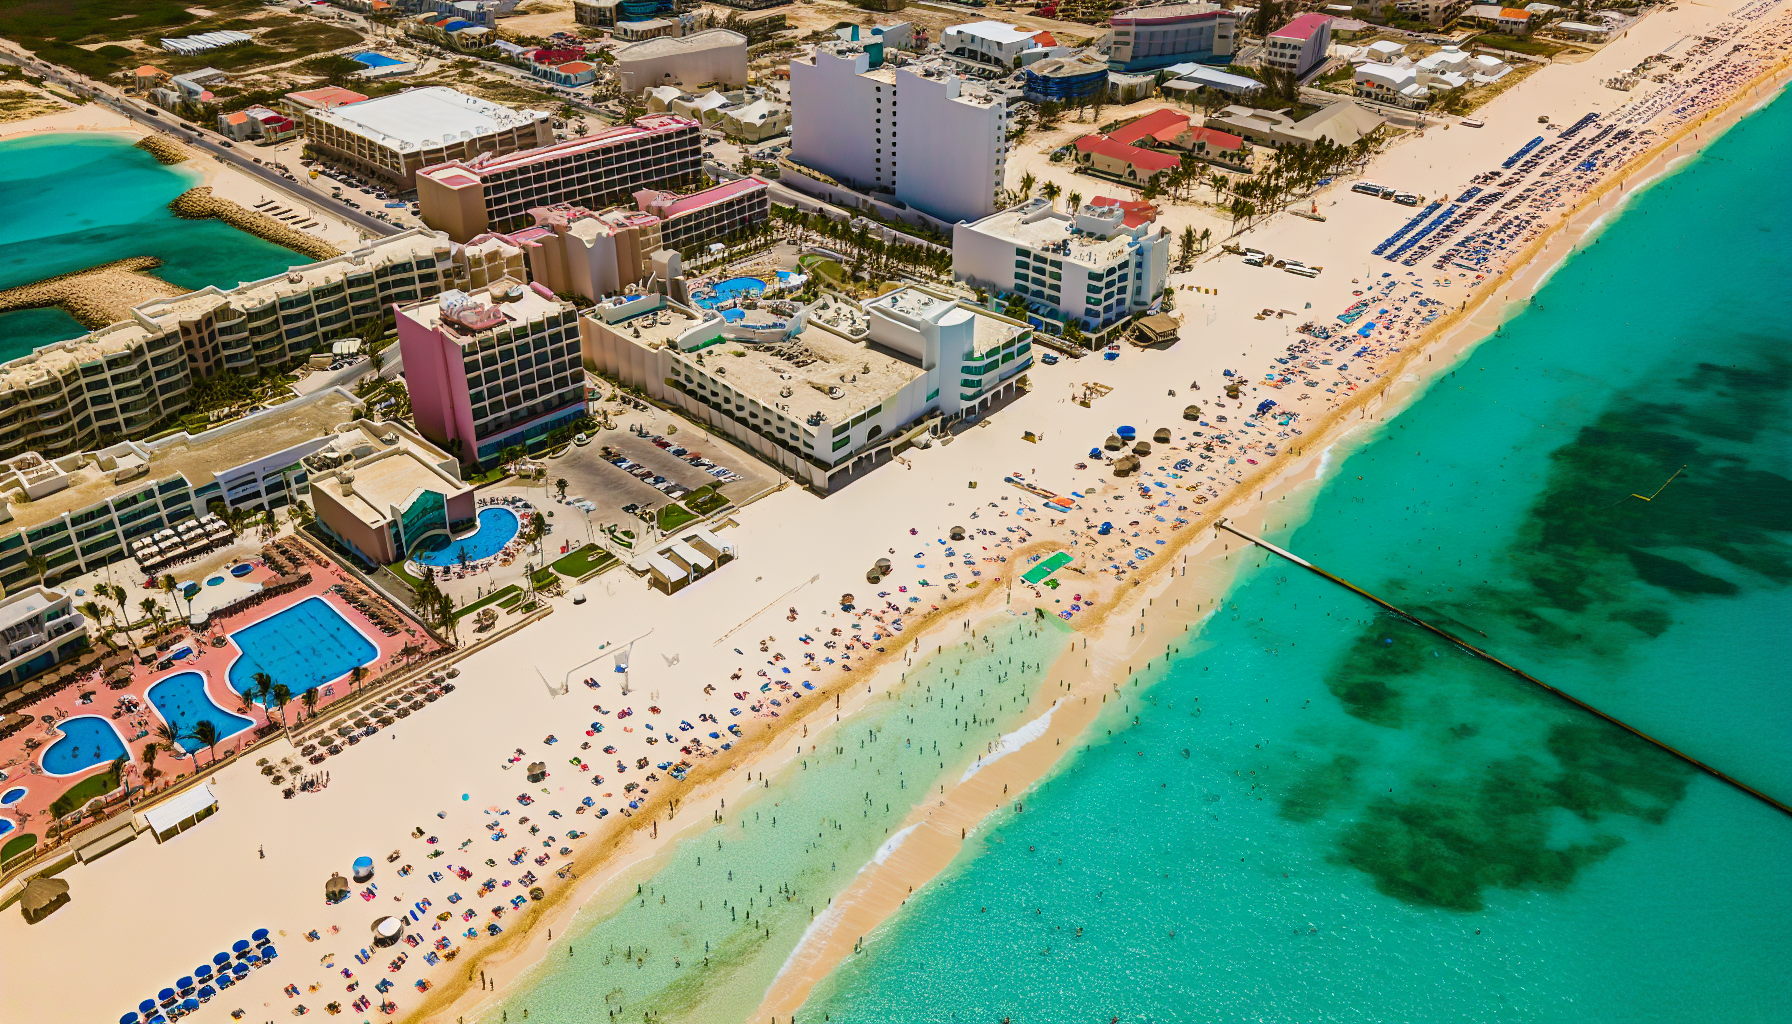 Aerial view of a coastal tourist destination